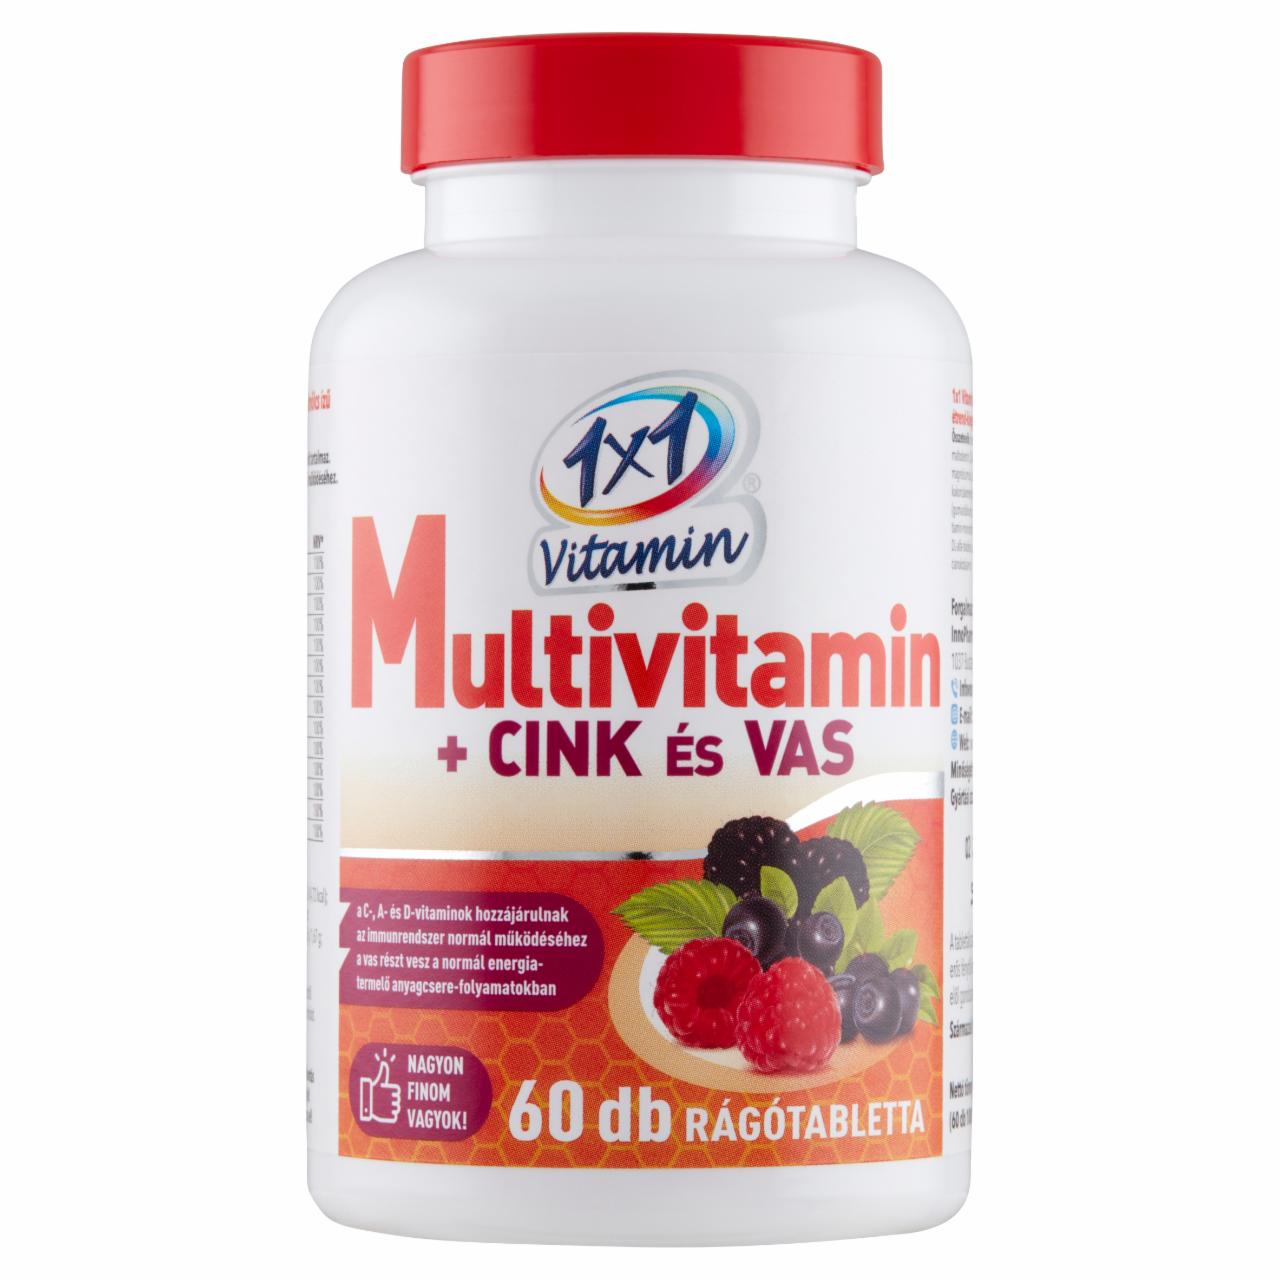 Képek - 1x1 Vitamin Multivitamin +cink & vas erdei gyümölcsös étrend-kiegészítő tabletta 60 db 60 g